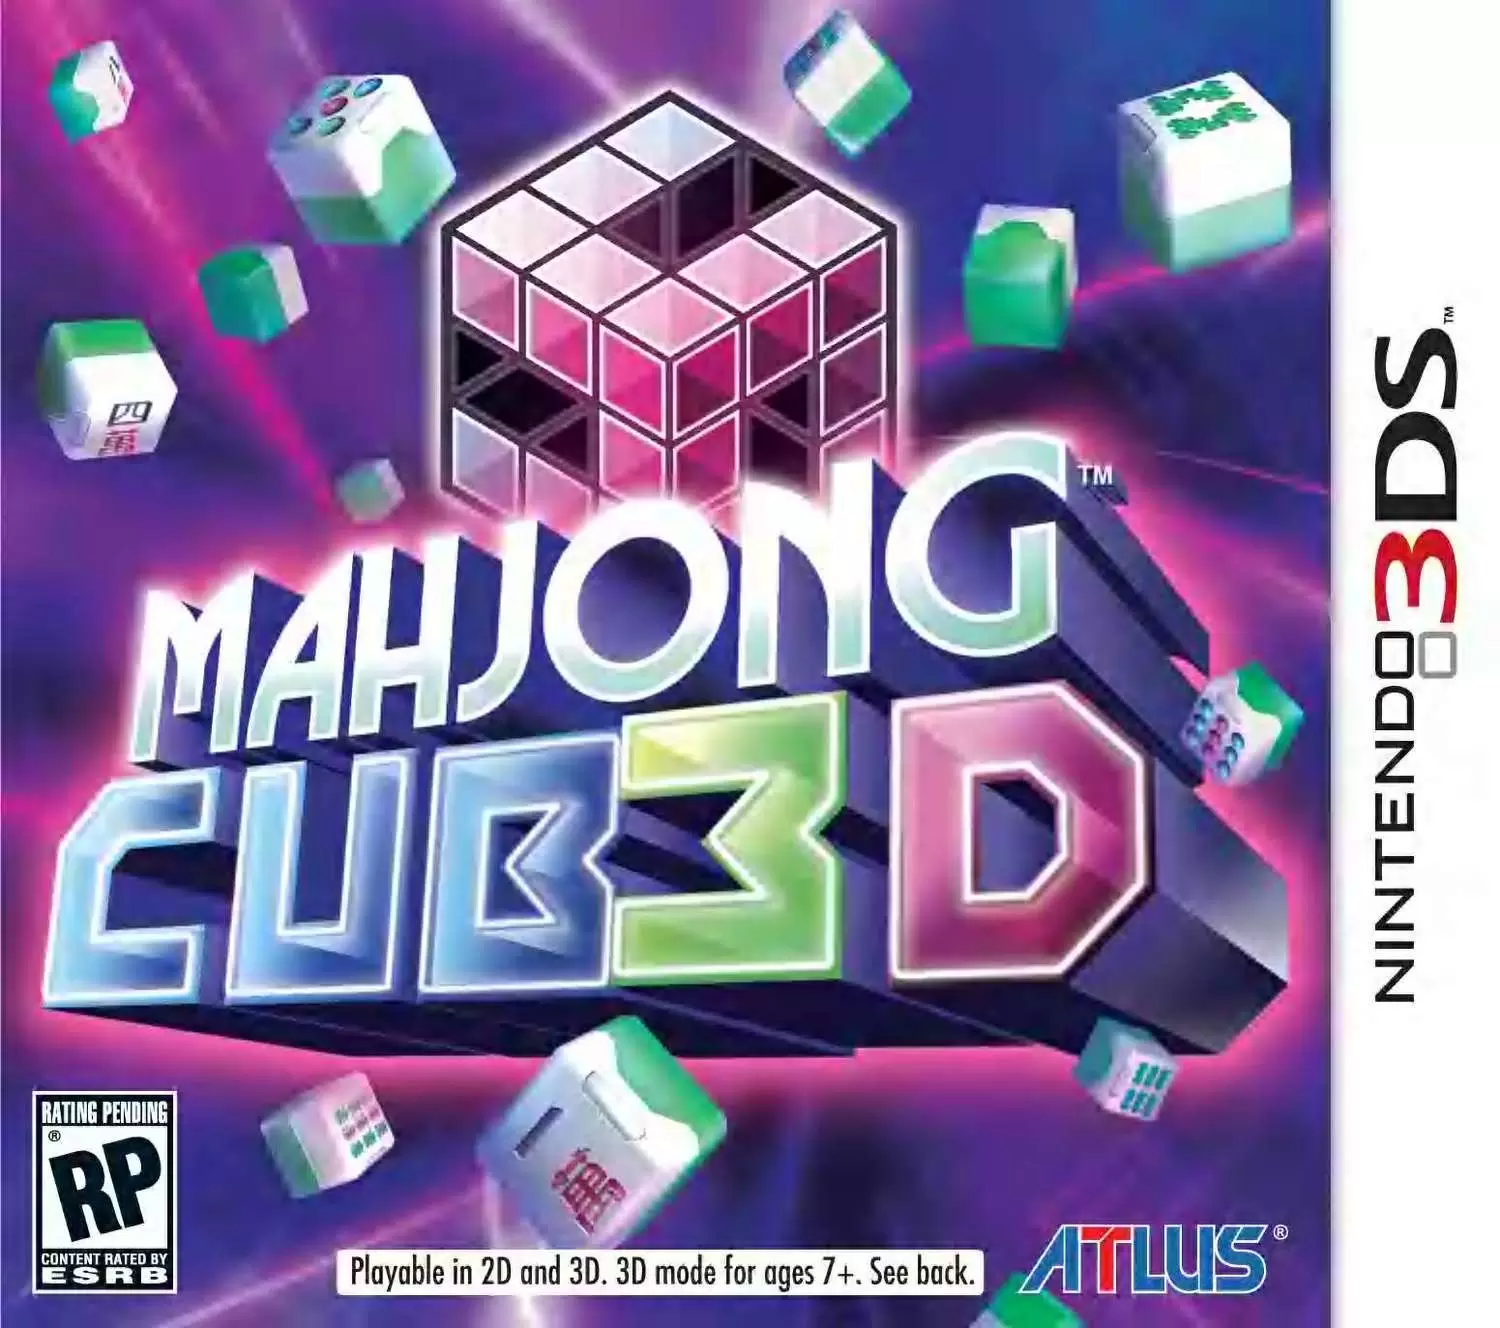 Nintendo 2DS / 3DS Games - Mahjong Cub3D